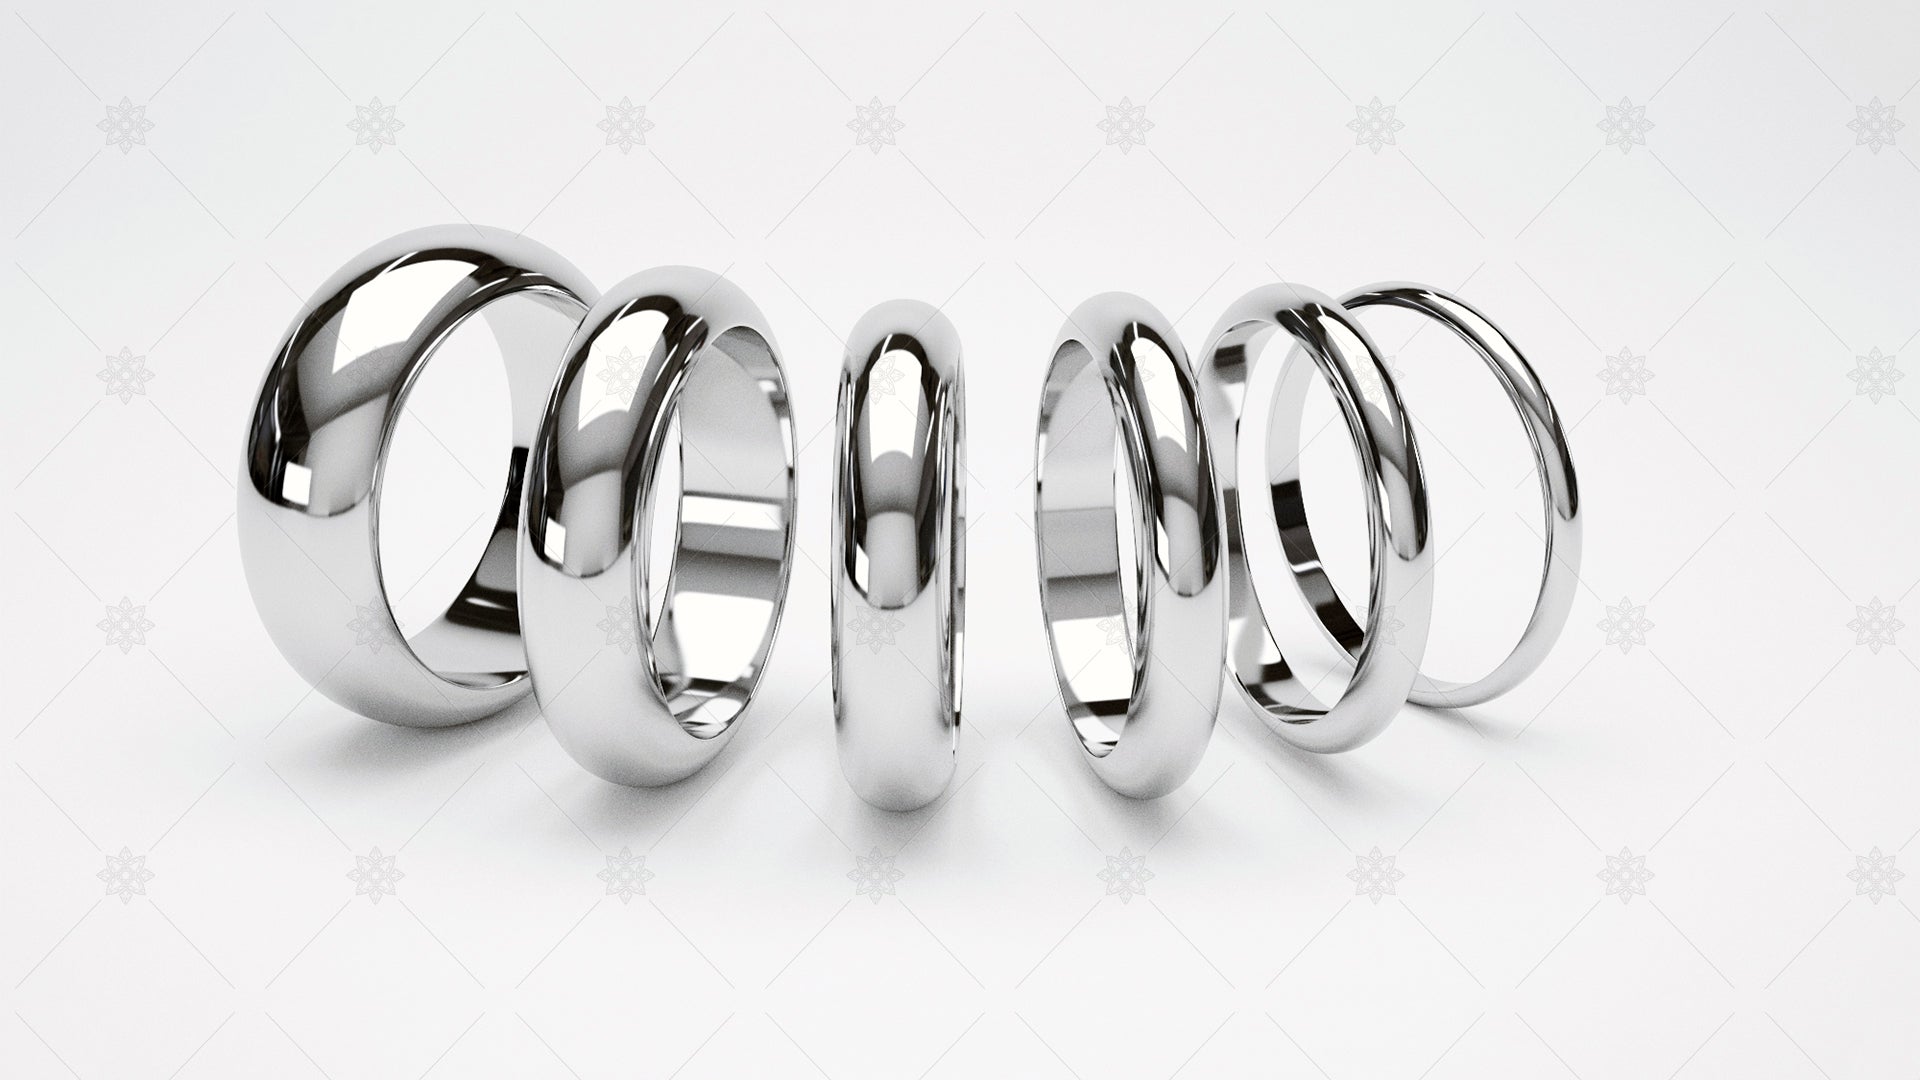 plain wedding ring website banner design